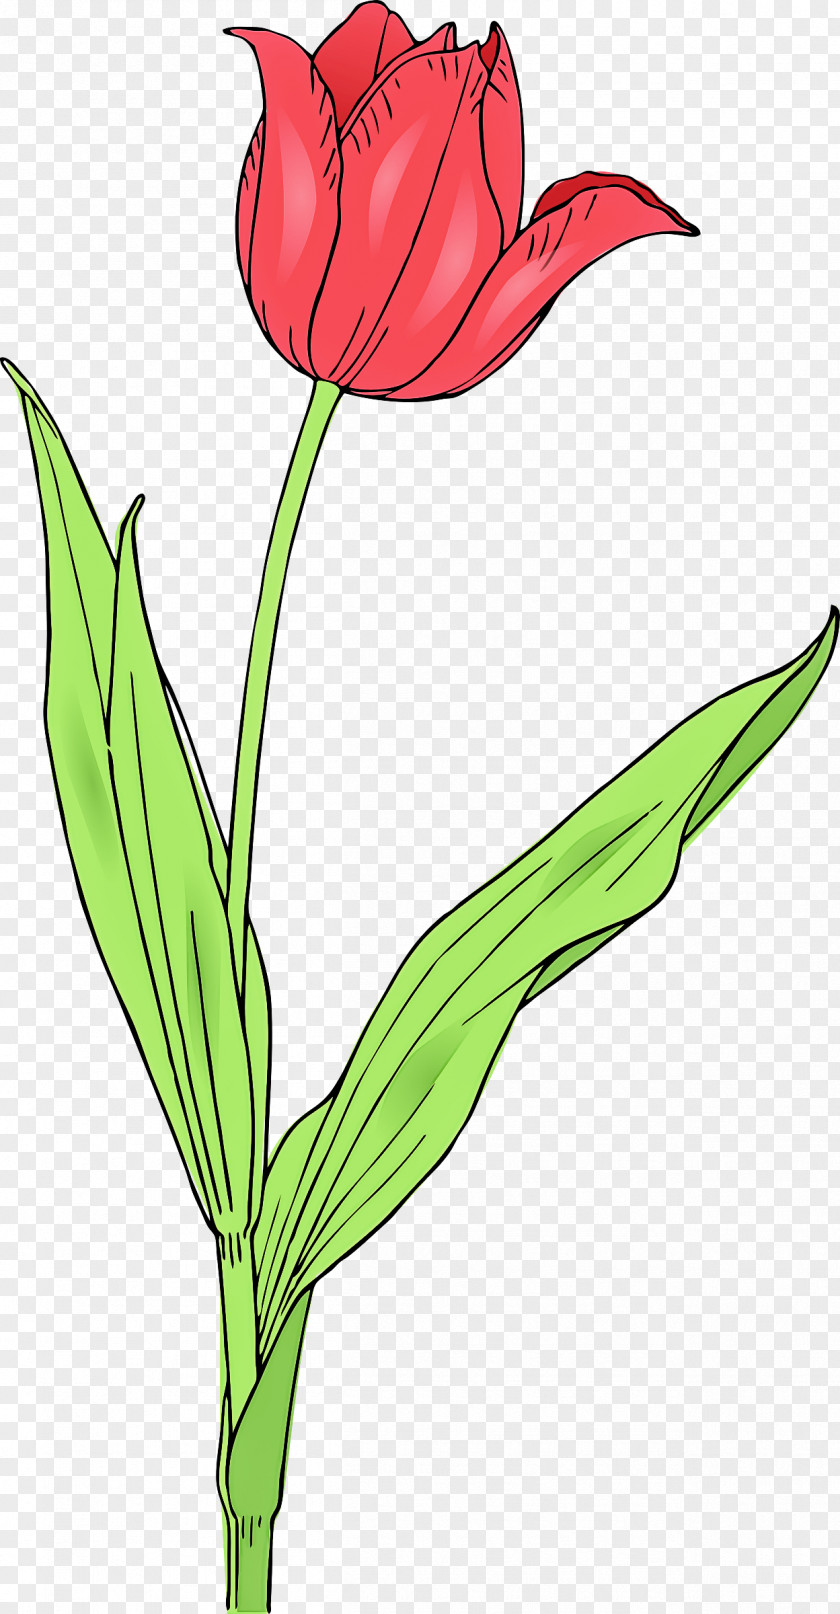 Cut Flowers Petal Flower Flowering Plant Tulip Pedicel PNG